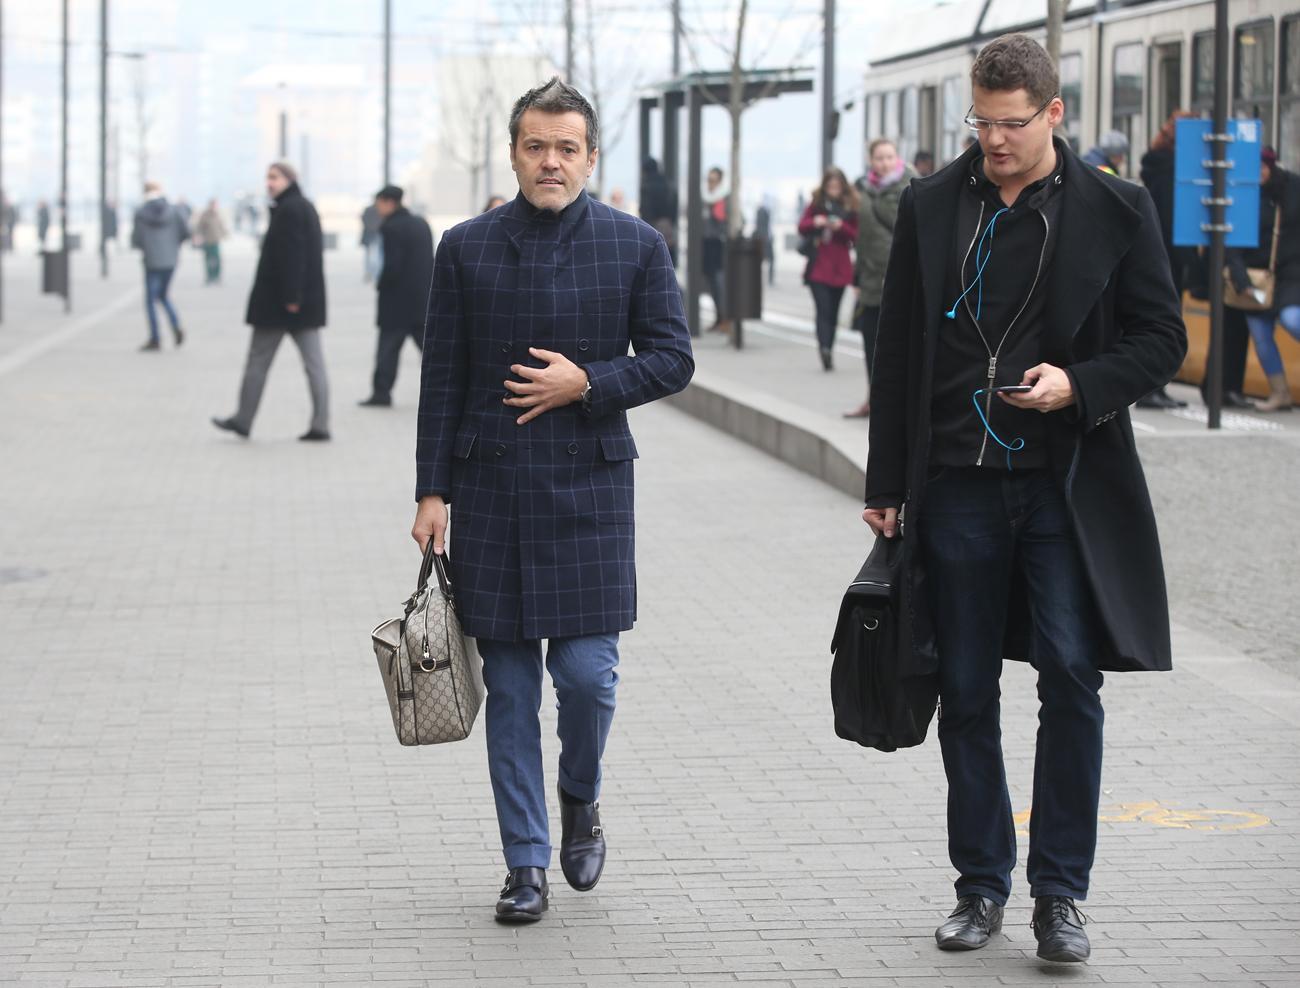 Habony Árpád miniszterelnöki tanácsadó azzal a félmilliós Gucci táskával a kezében, amellyel tavaly decemberben vágott át a szegénység ellen tüntetők között a Kossuth téren